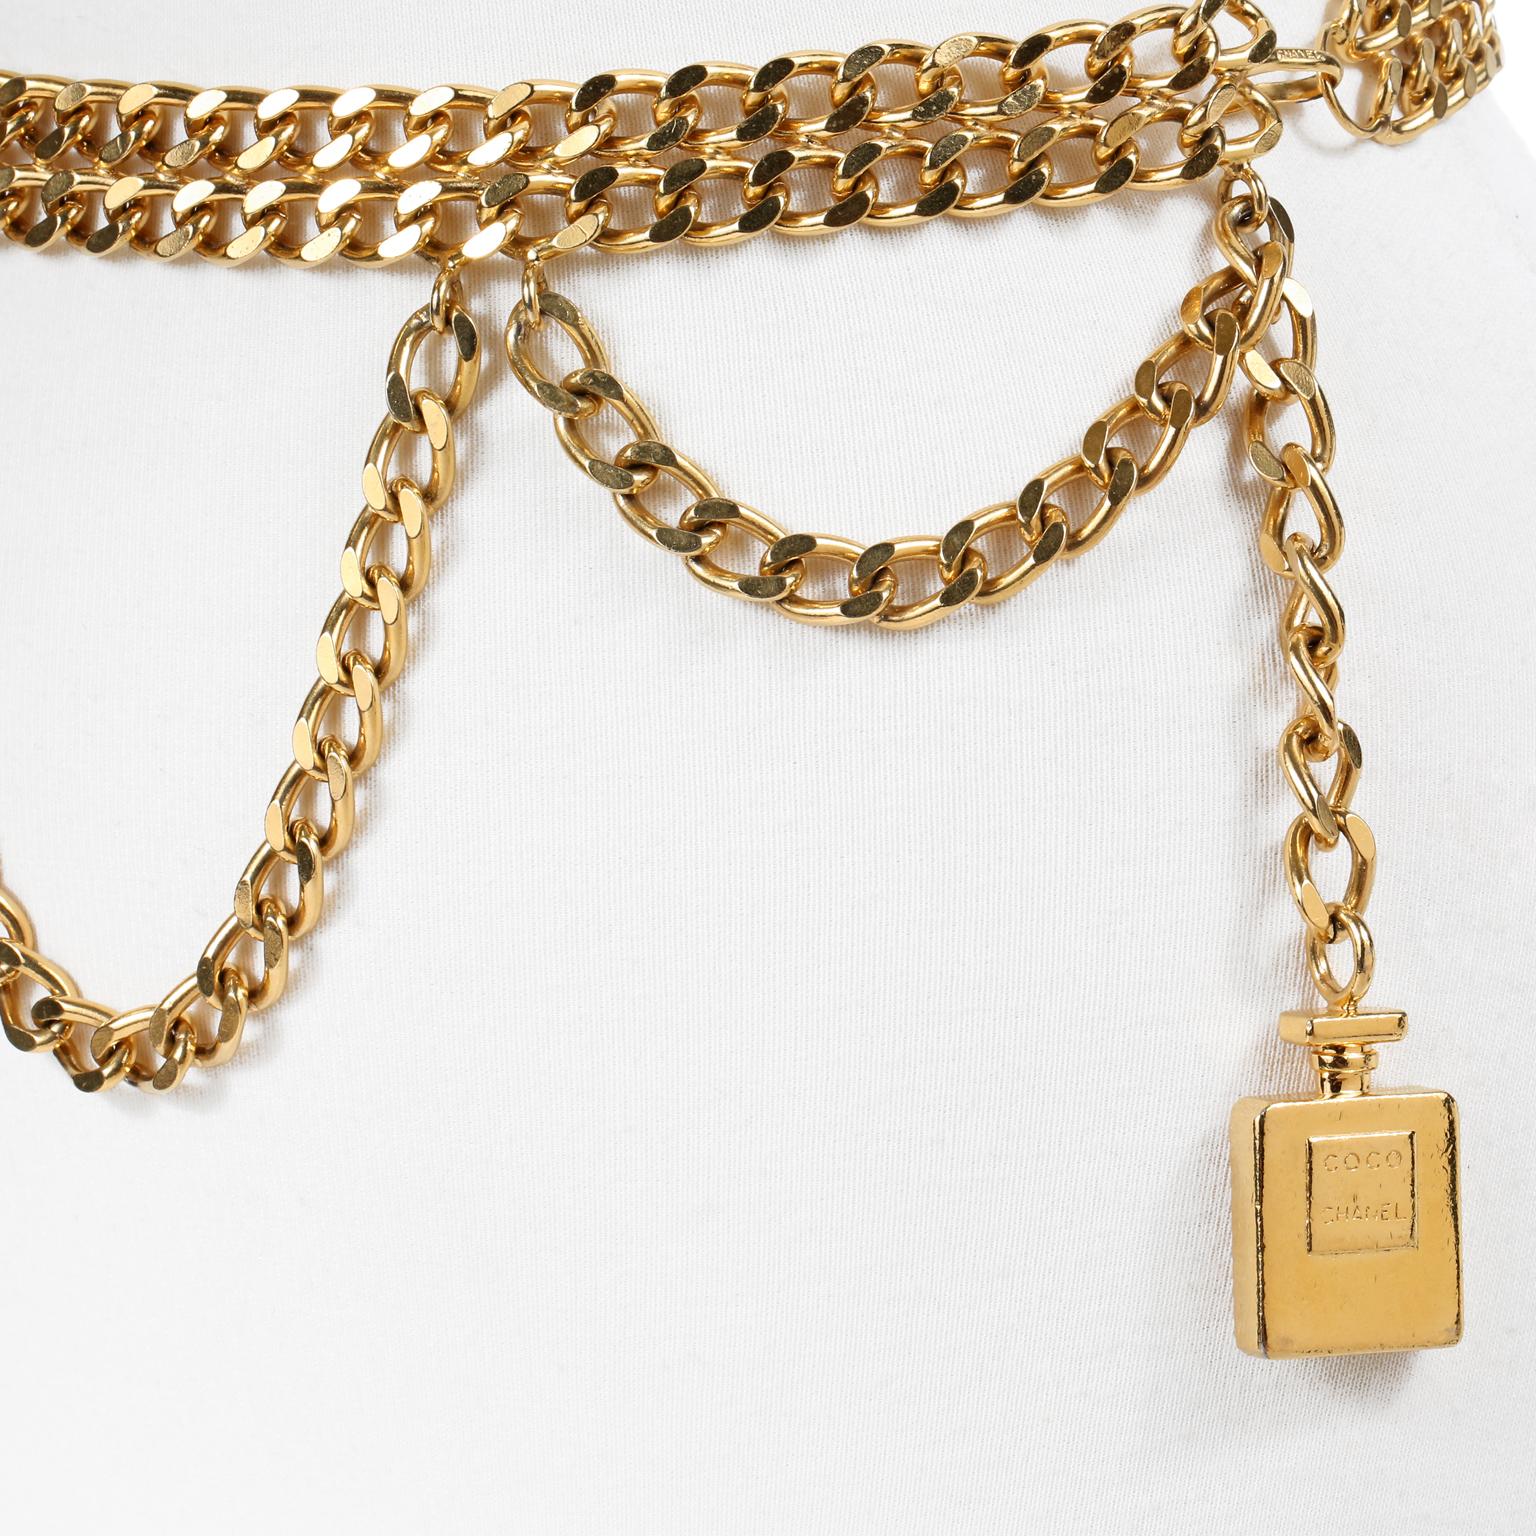 Diese authentische Chanel Parfüm Flasche Triple Chain Belt ist in schönem Zustand.  Kräftige doppelte Lage goldfarbener Gliederkette mit einer dritten drapierten Kette.  Am Ende baumelt ein goldener Flakon des Parfums COCO CHANEL.  Hakenverschluss. 